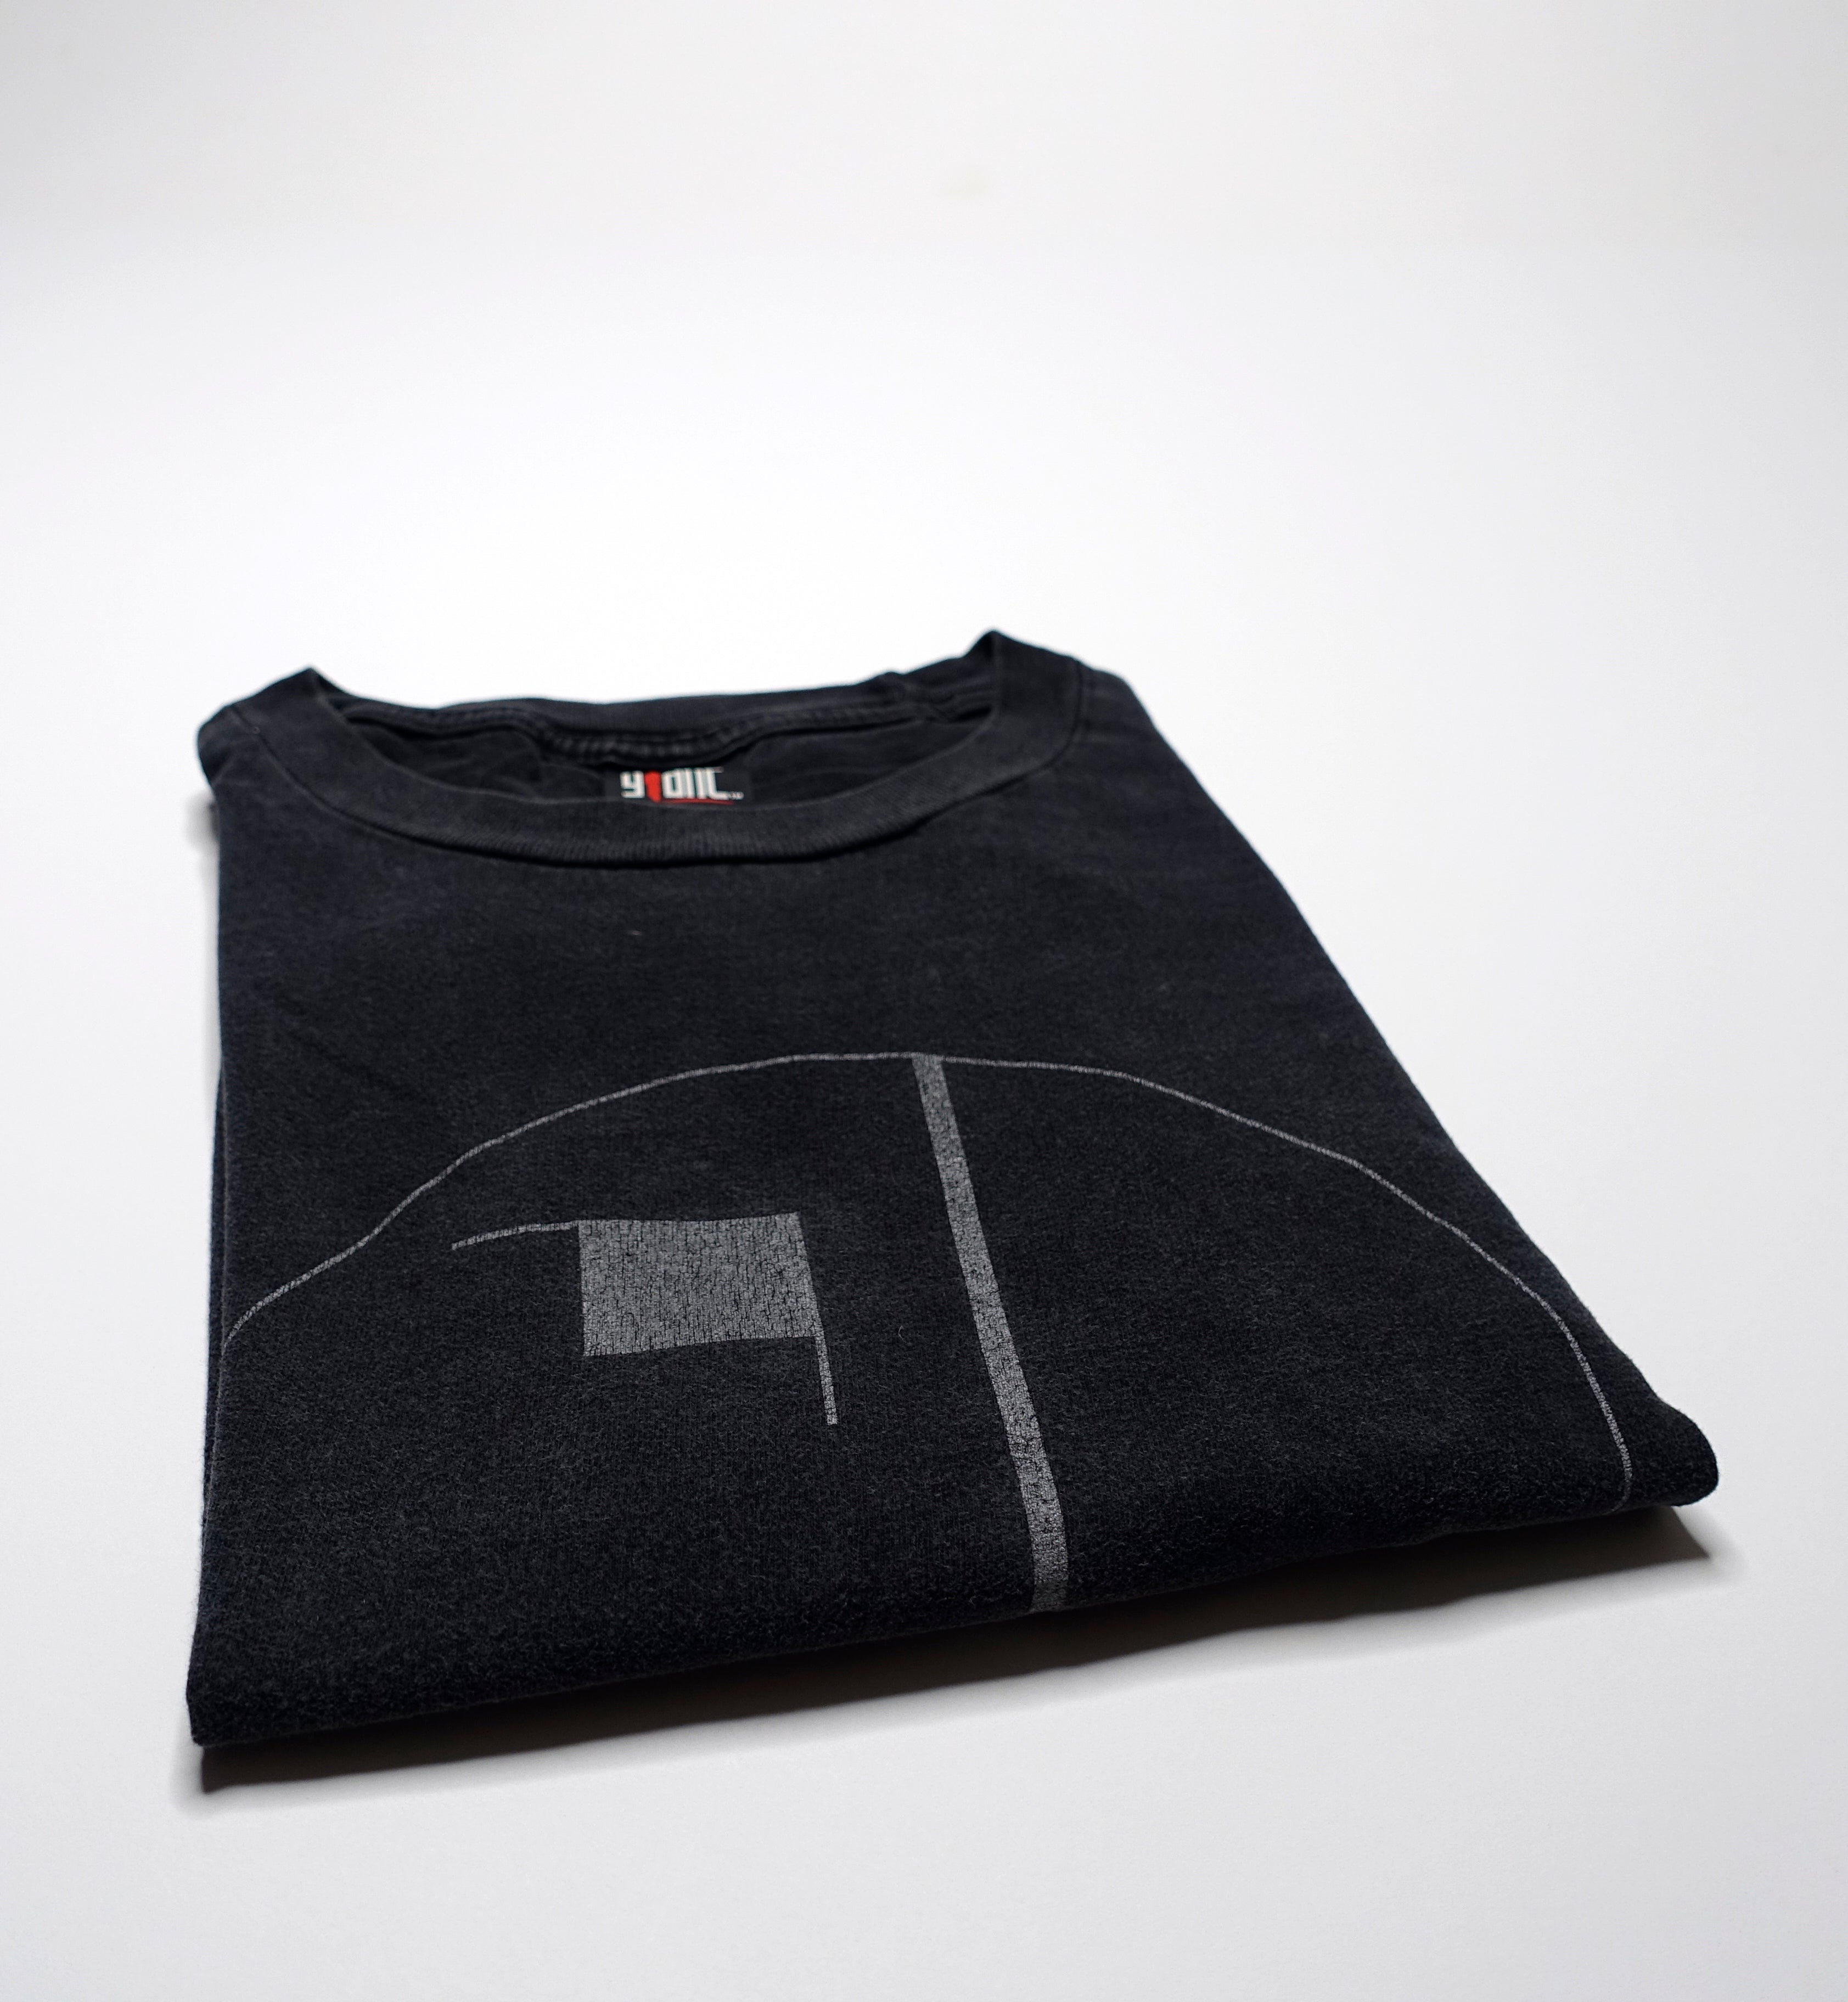 Bauhaus - Face #1 Tour Shirt Size XL